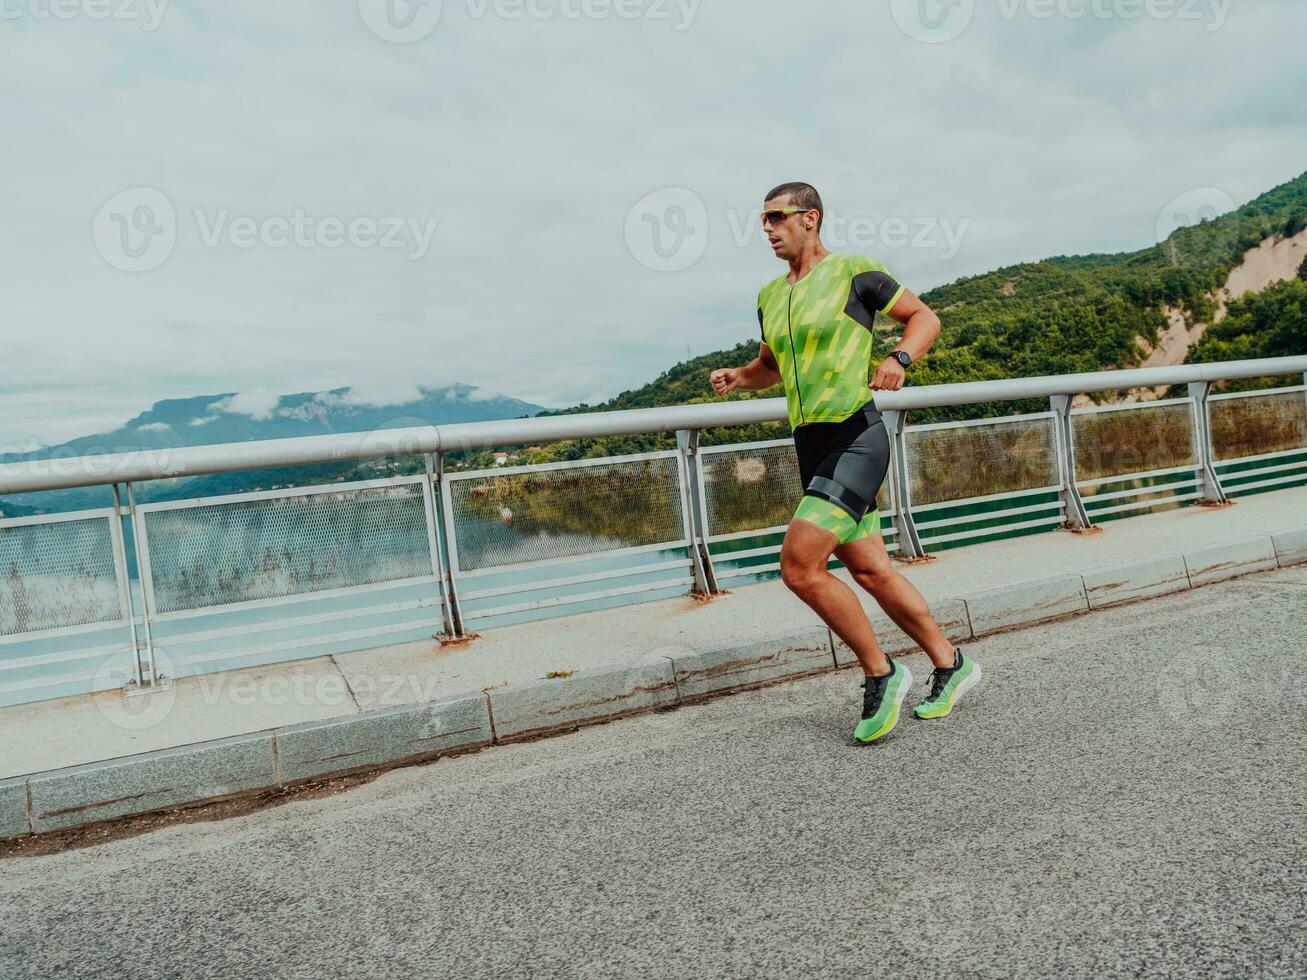 een atleet rennen een marathon en voorbereidingen treffen voor zijn wedstrijd. foto van een marathon loper rennen in een stedelijk milieu